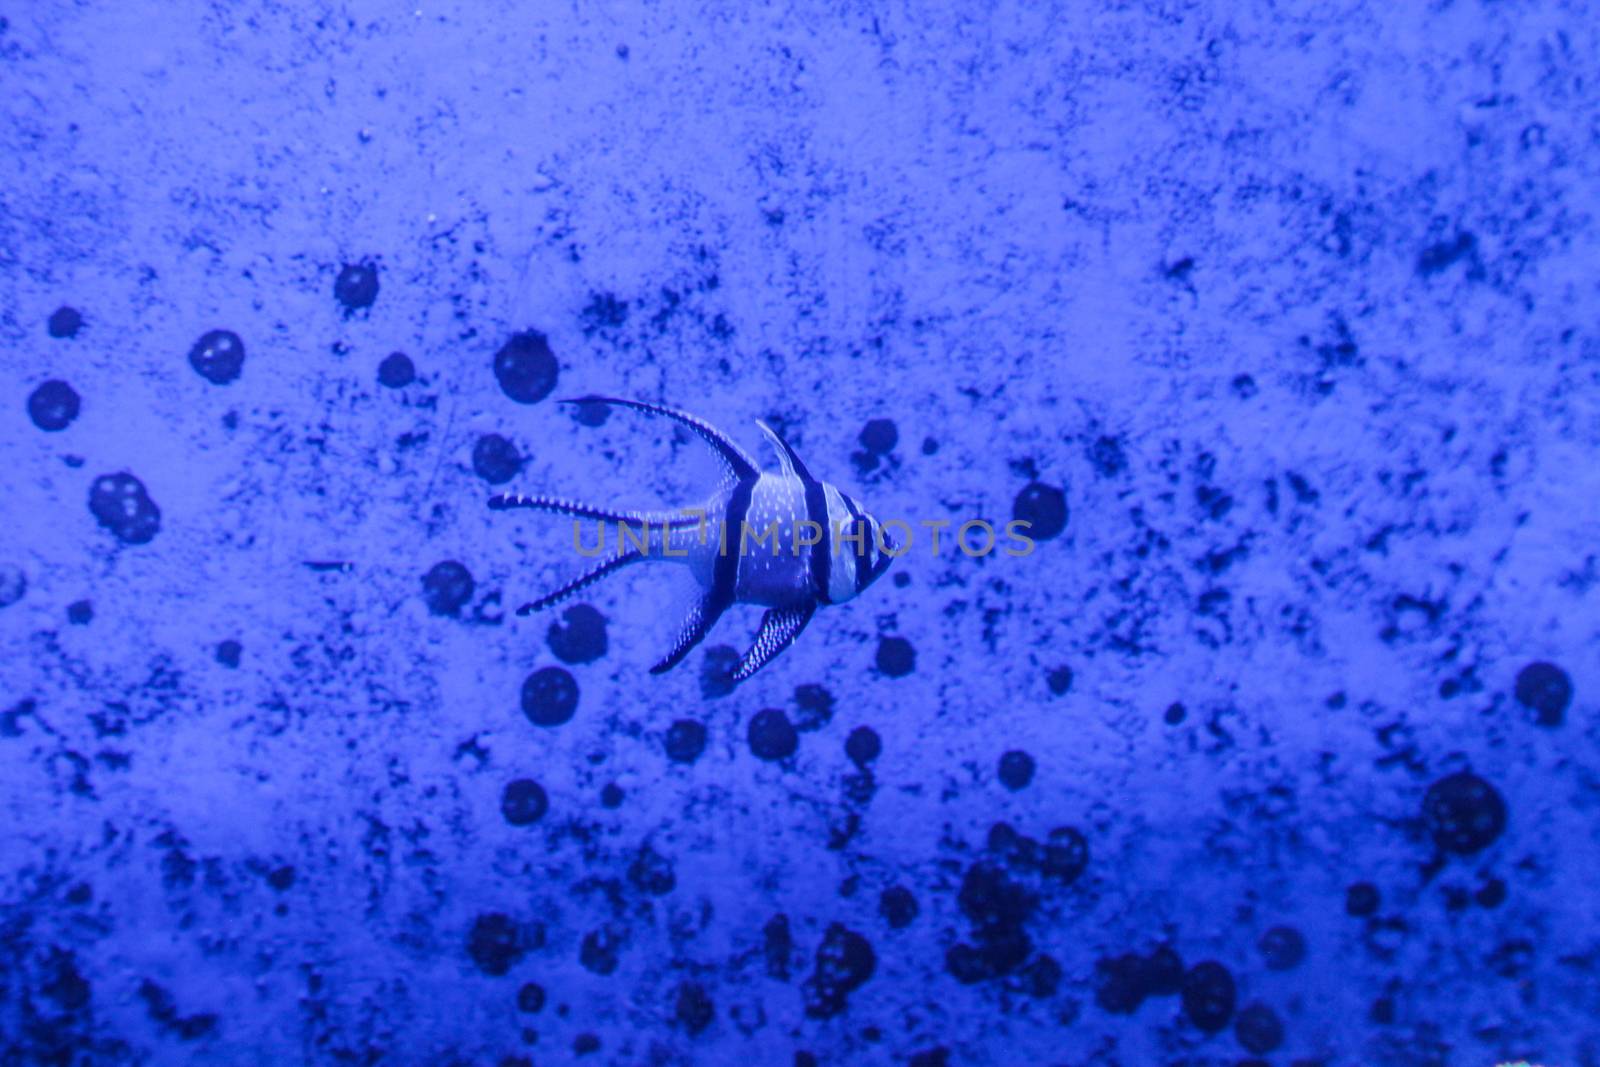 Angelfish underwater in blue grunge background graphical by haiderazim